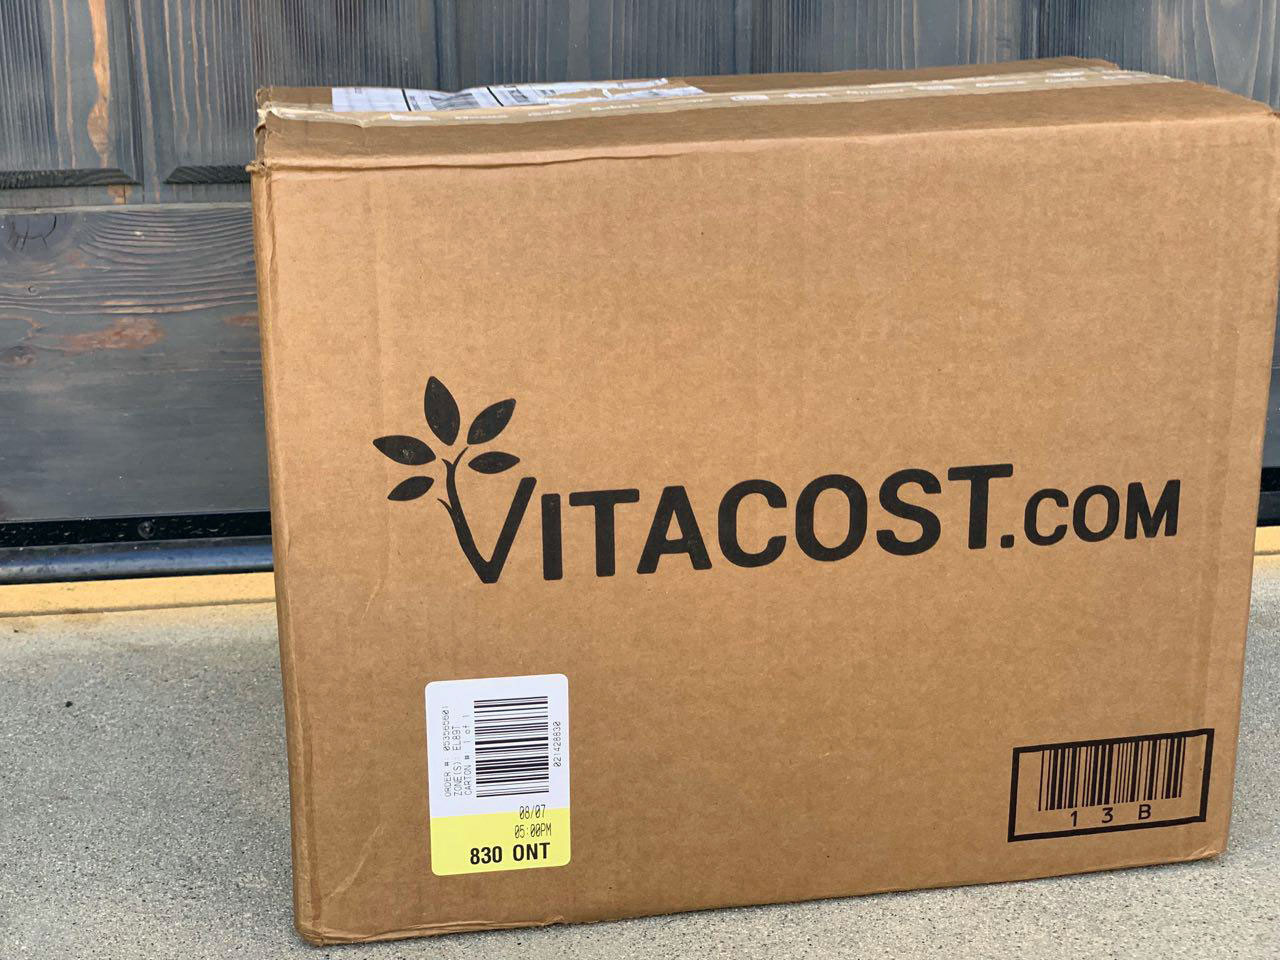 VitaCost Discount